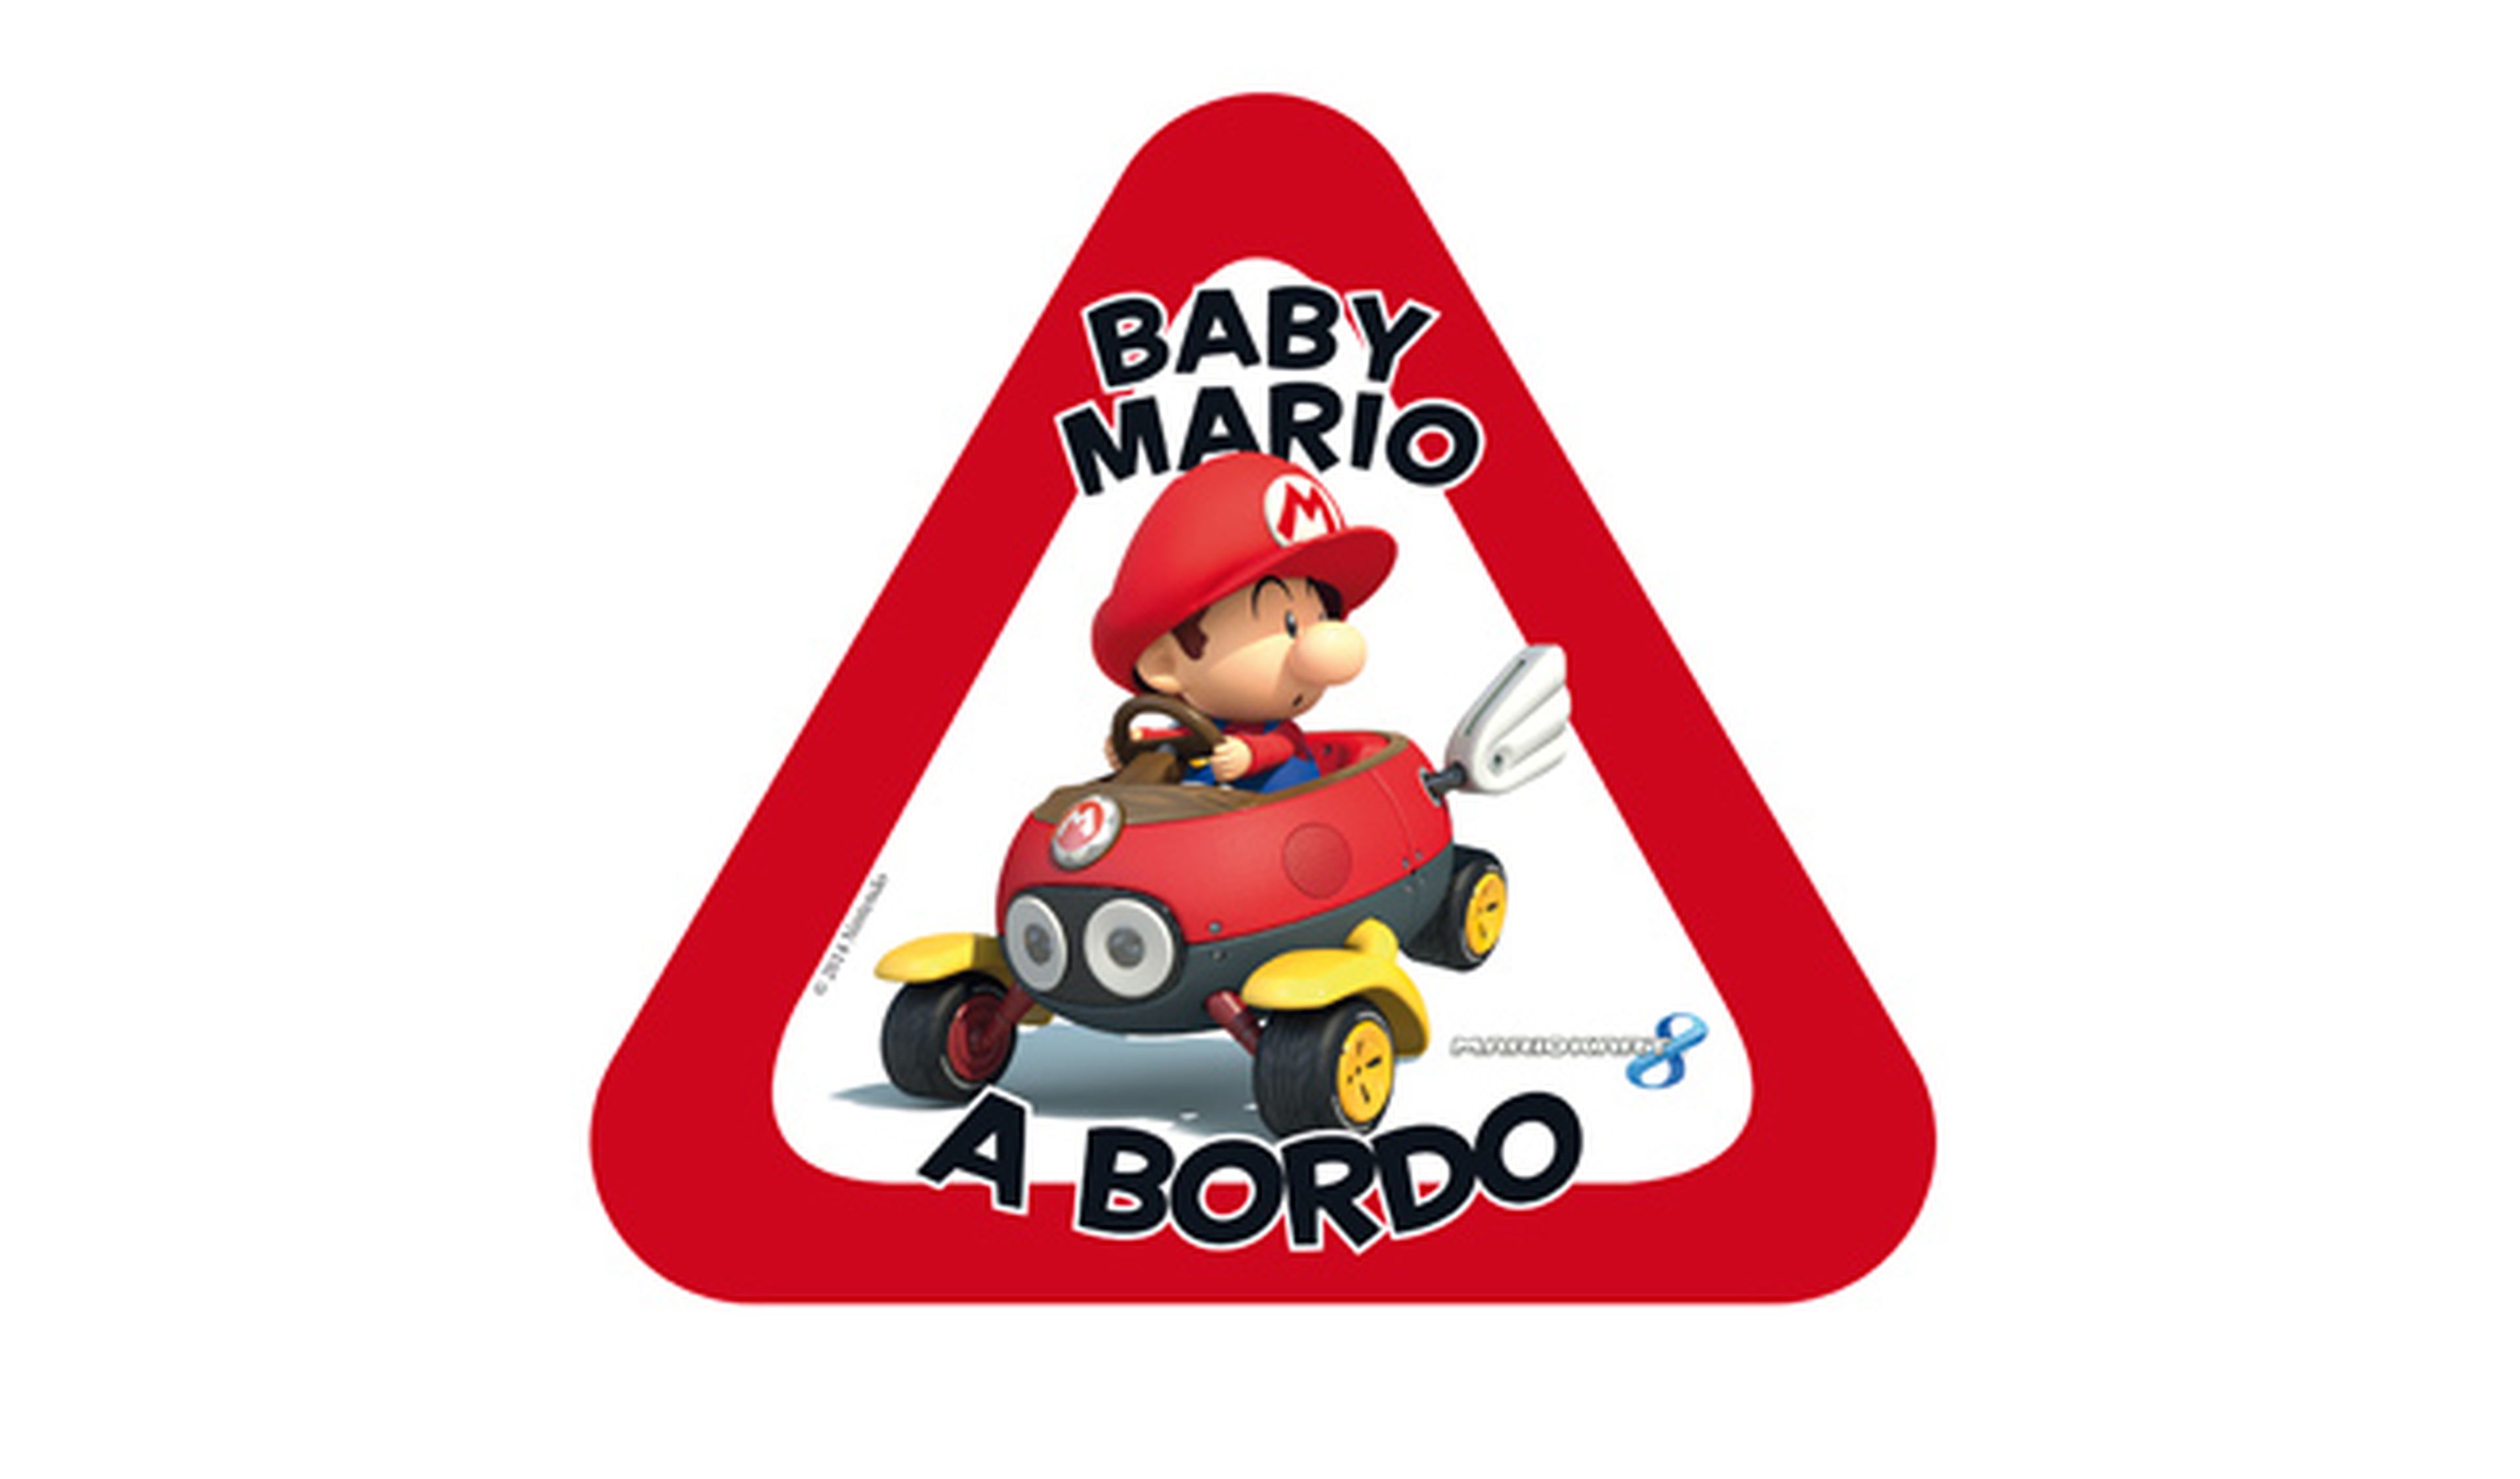 ¡Baby Mario a bordo!